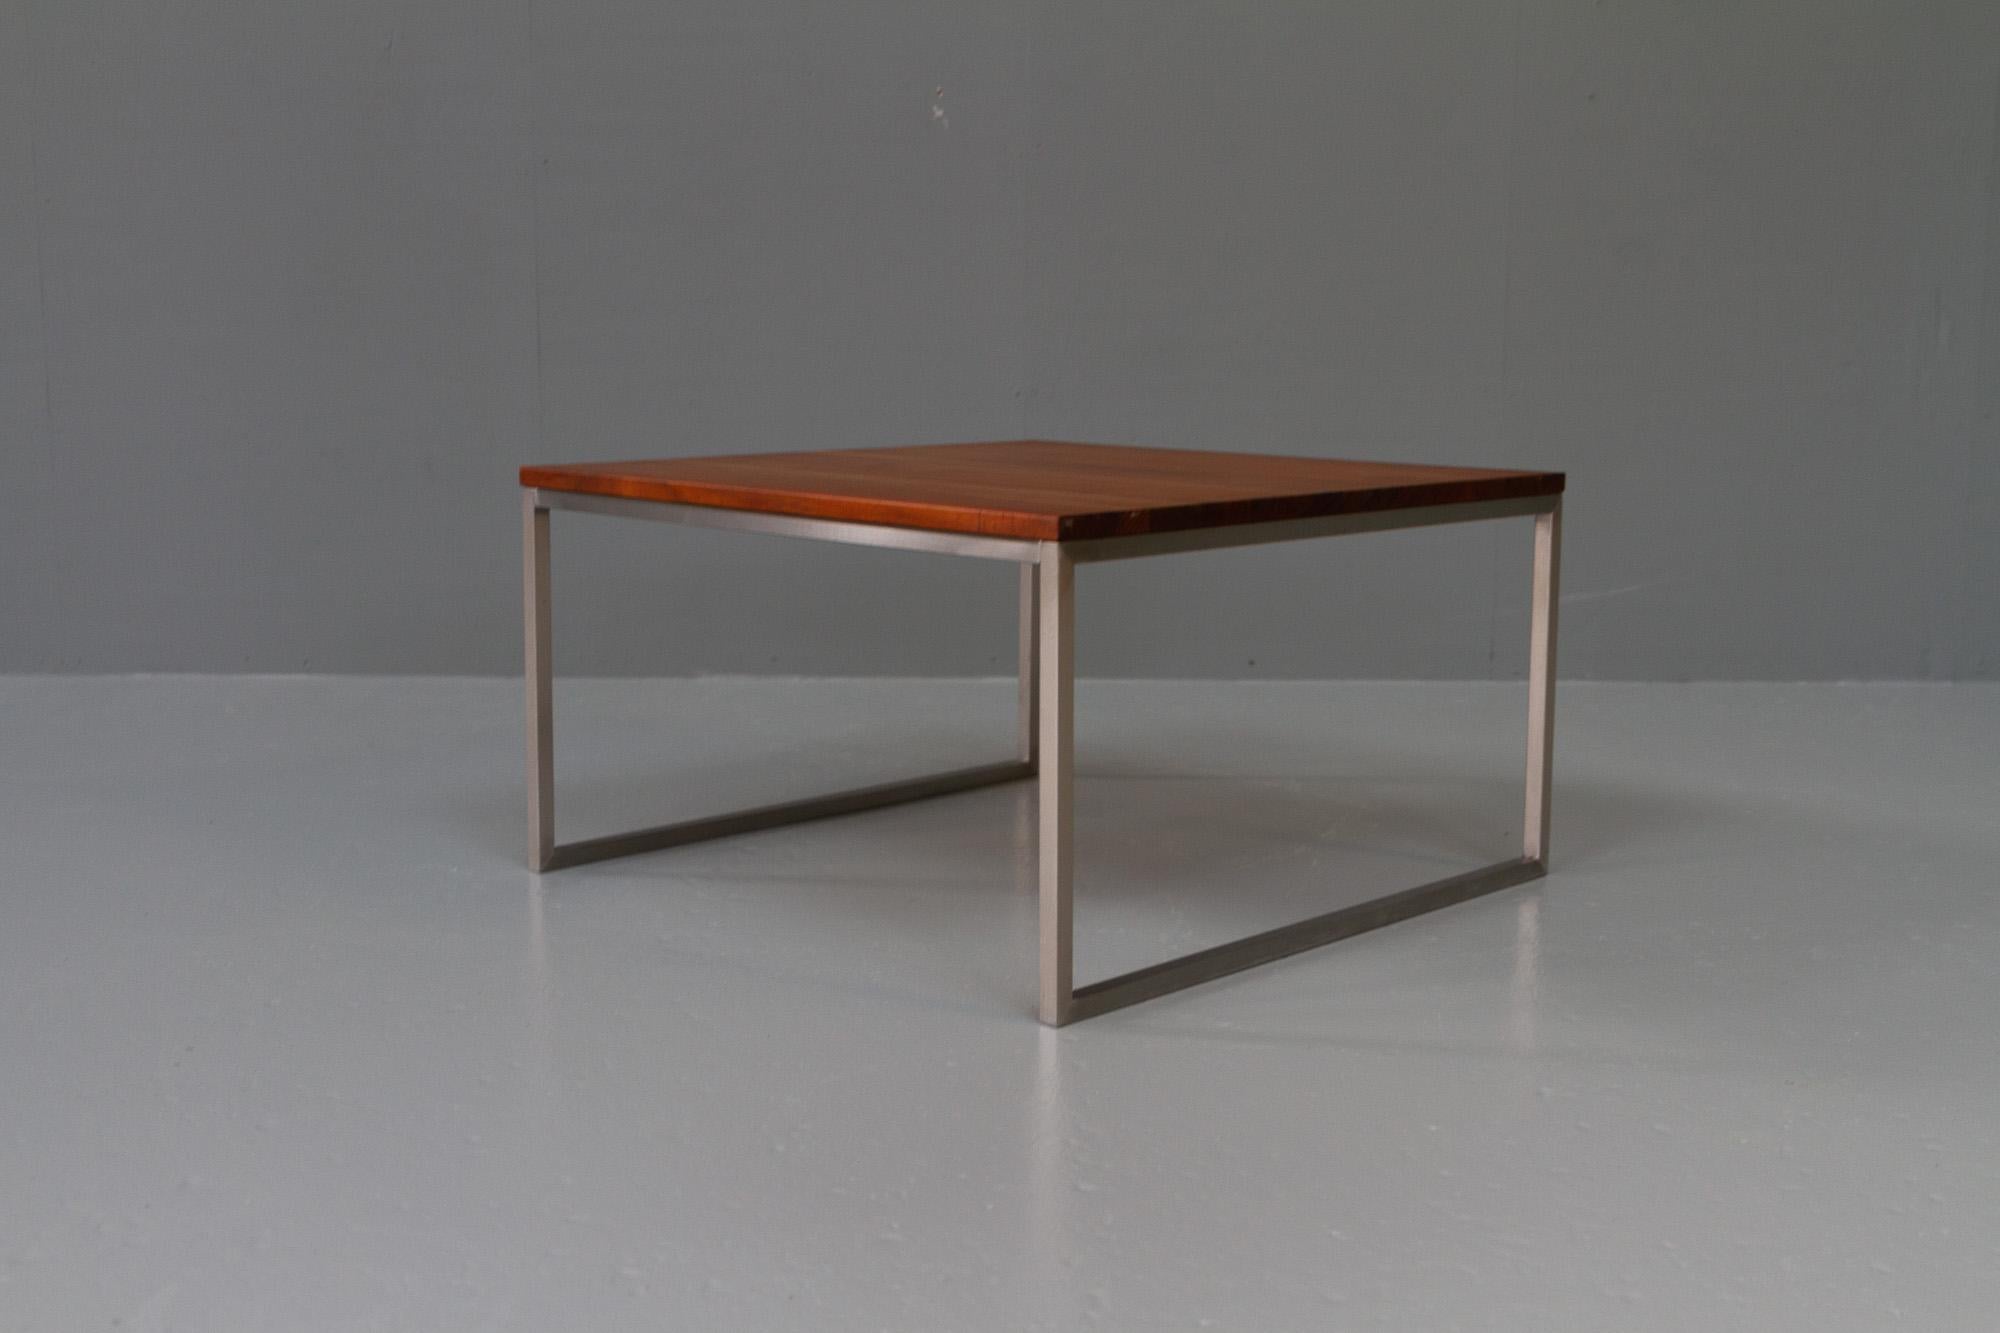 Vintage Table basse moderne danoise en teck, années 1960.
Élégance minimaliste et design cubique pour cette table d'appoint conçue et fabriquée au Danemark dans les années 1960. Conçu dans le style de l'architecte danois Poul Kjærholm.
Plateau de